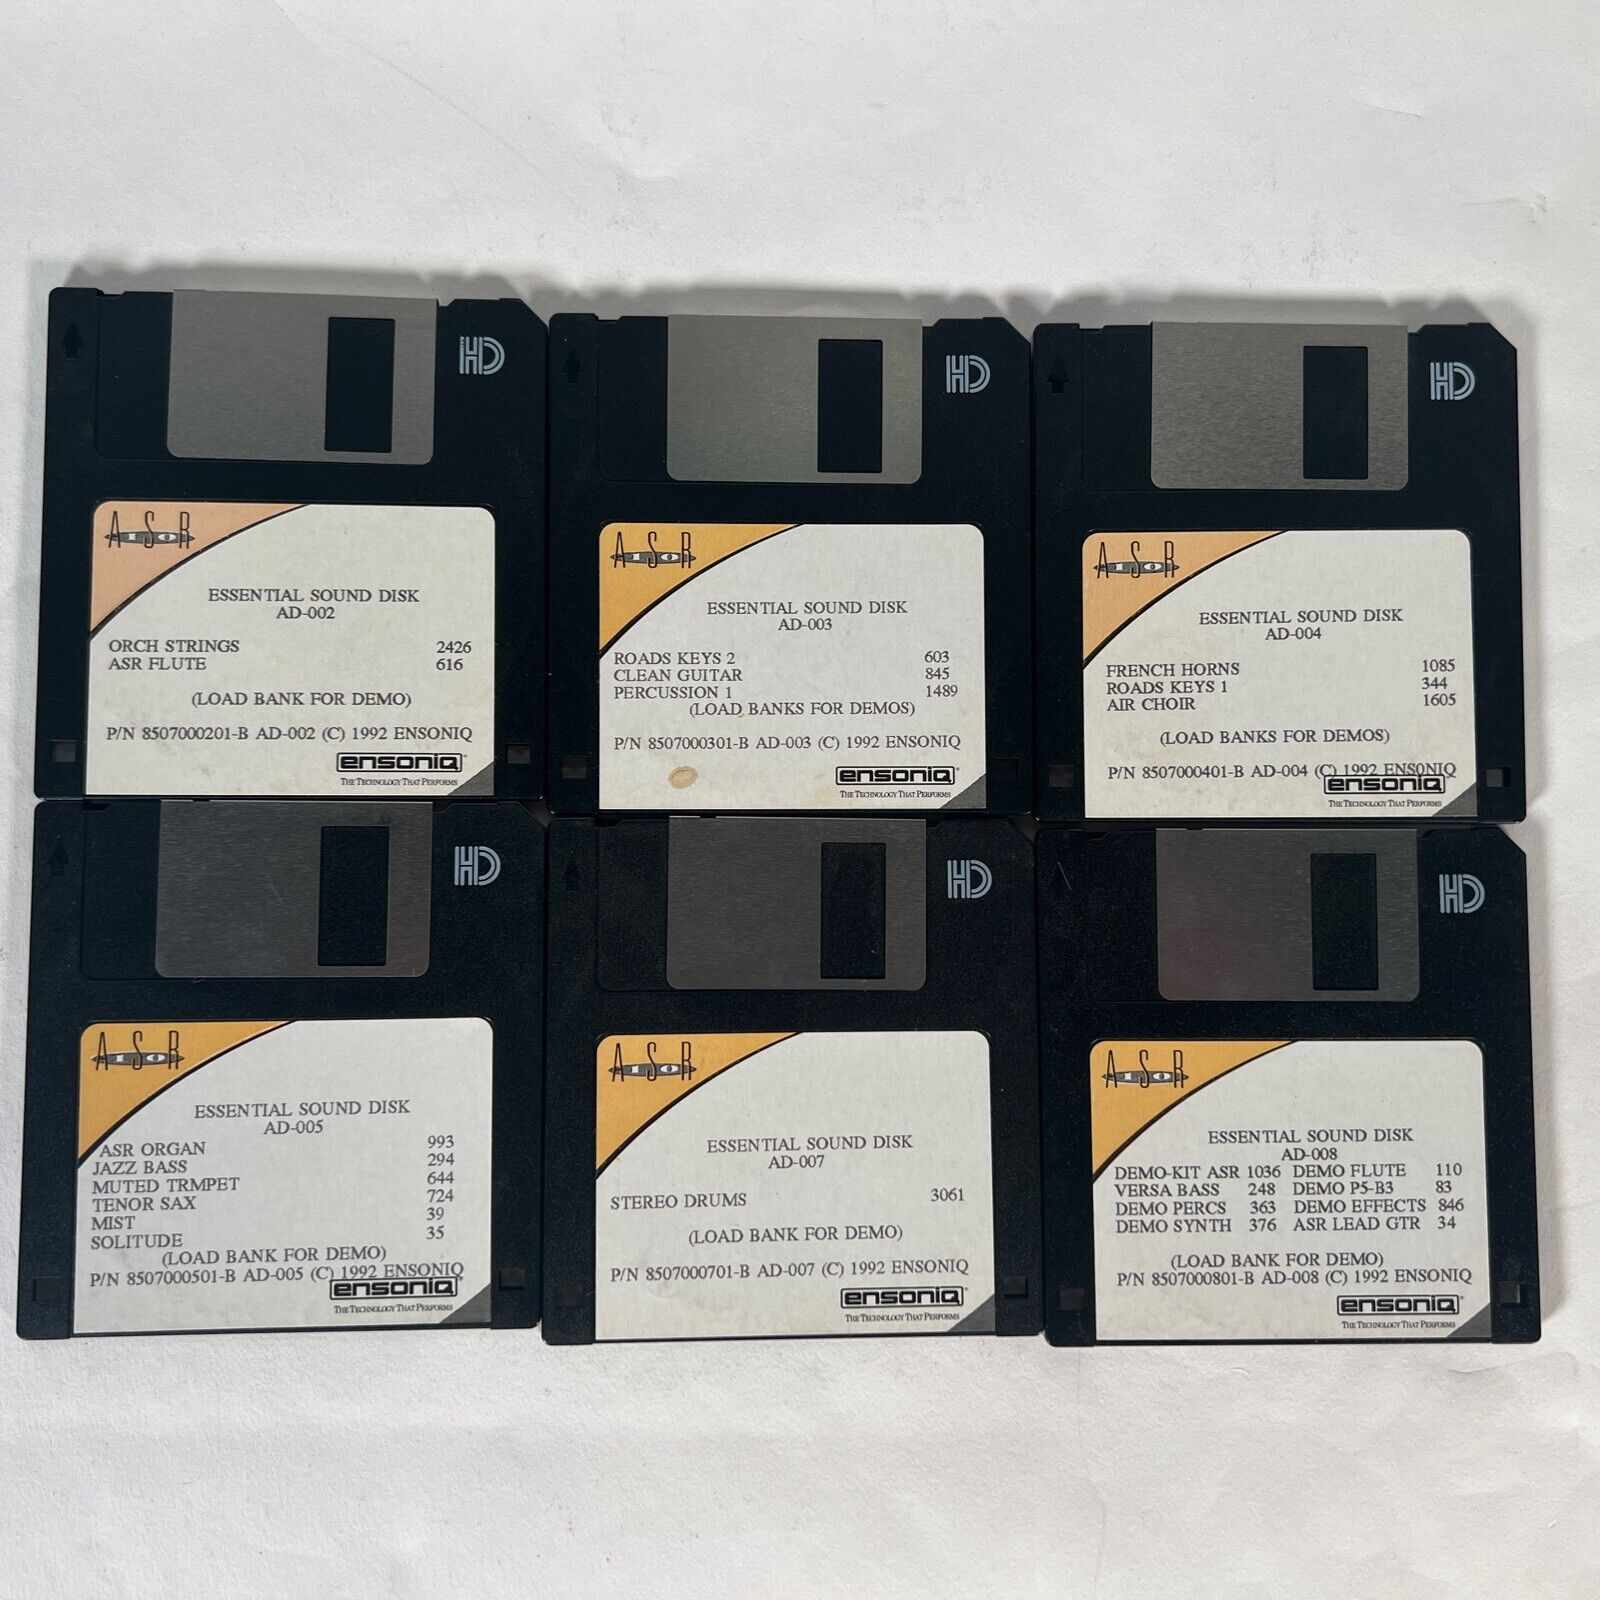 Ensoniq ASR-10 Essential Sound Disk - 6 Floppy Disk Set